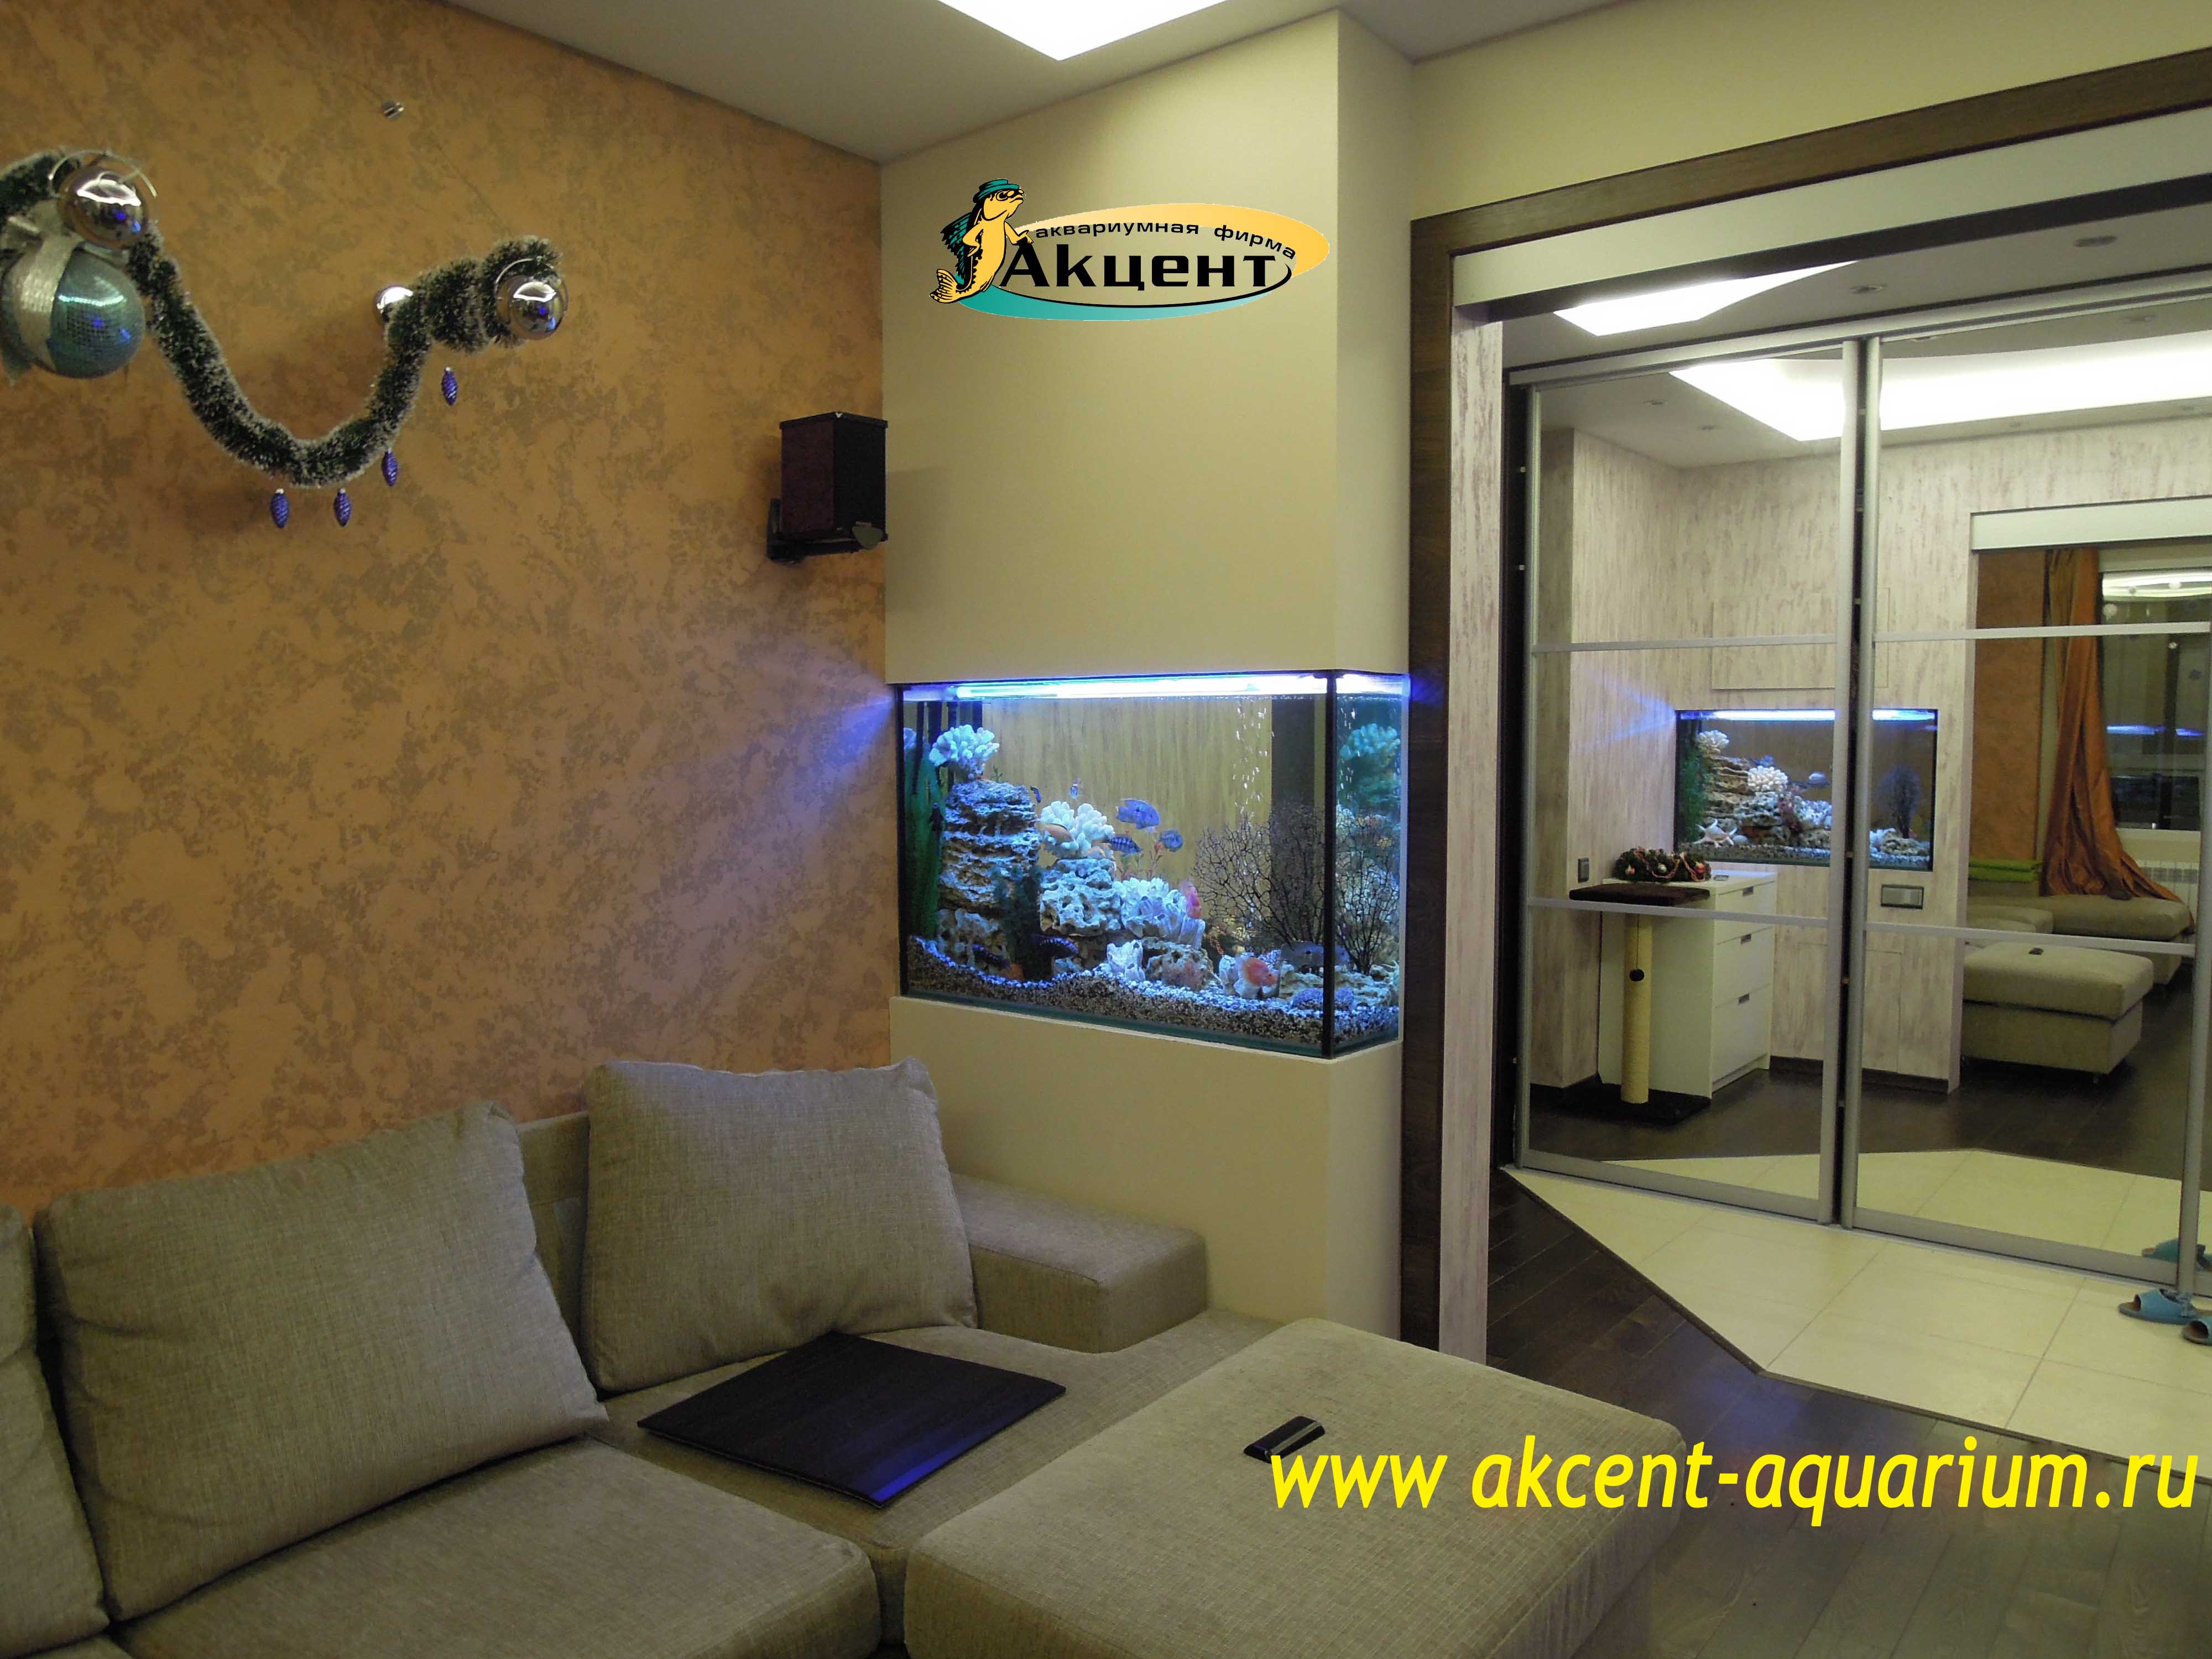 Акцент-аквариум, аквариум 300 литров встроенный в стену